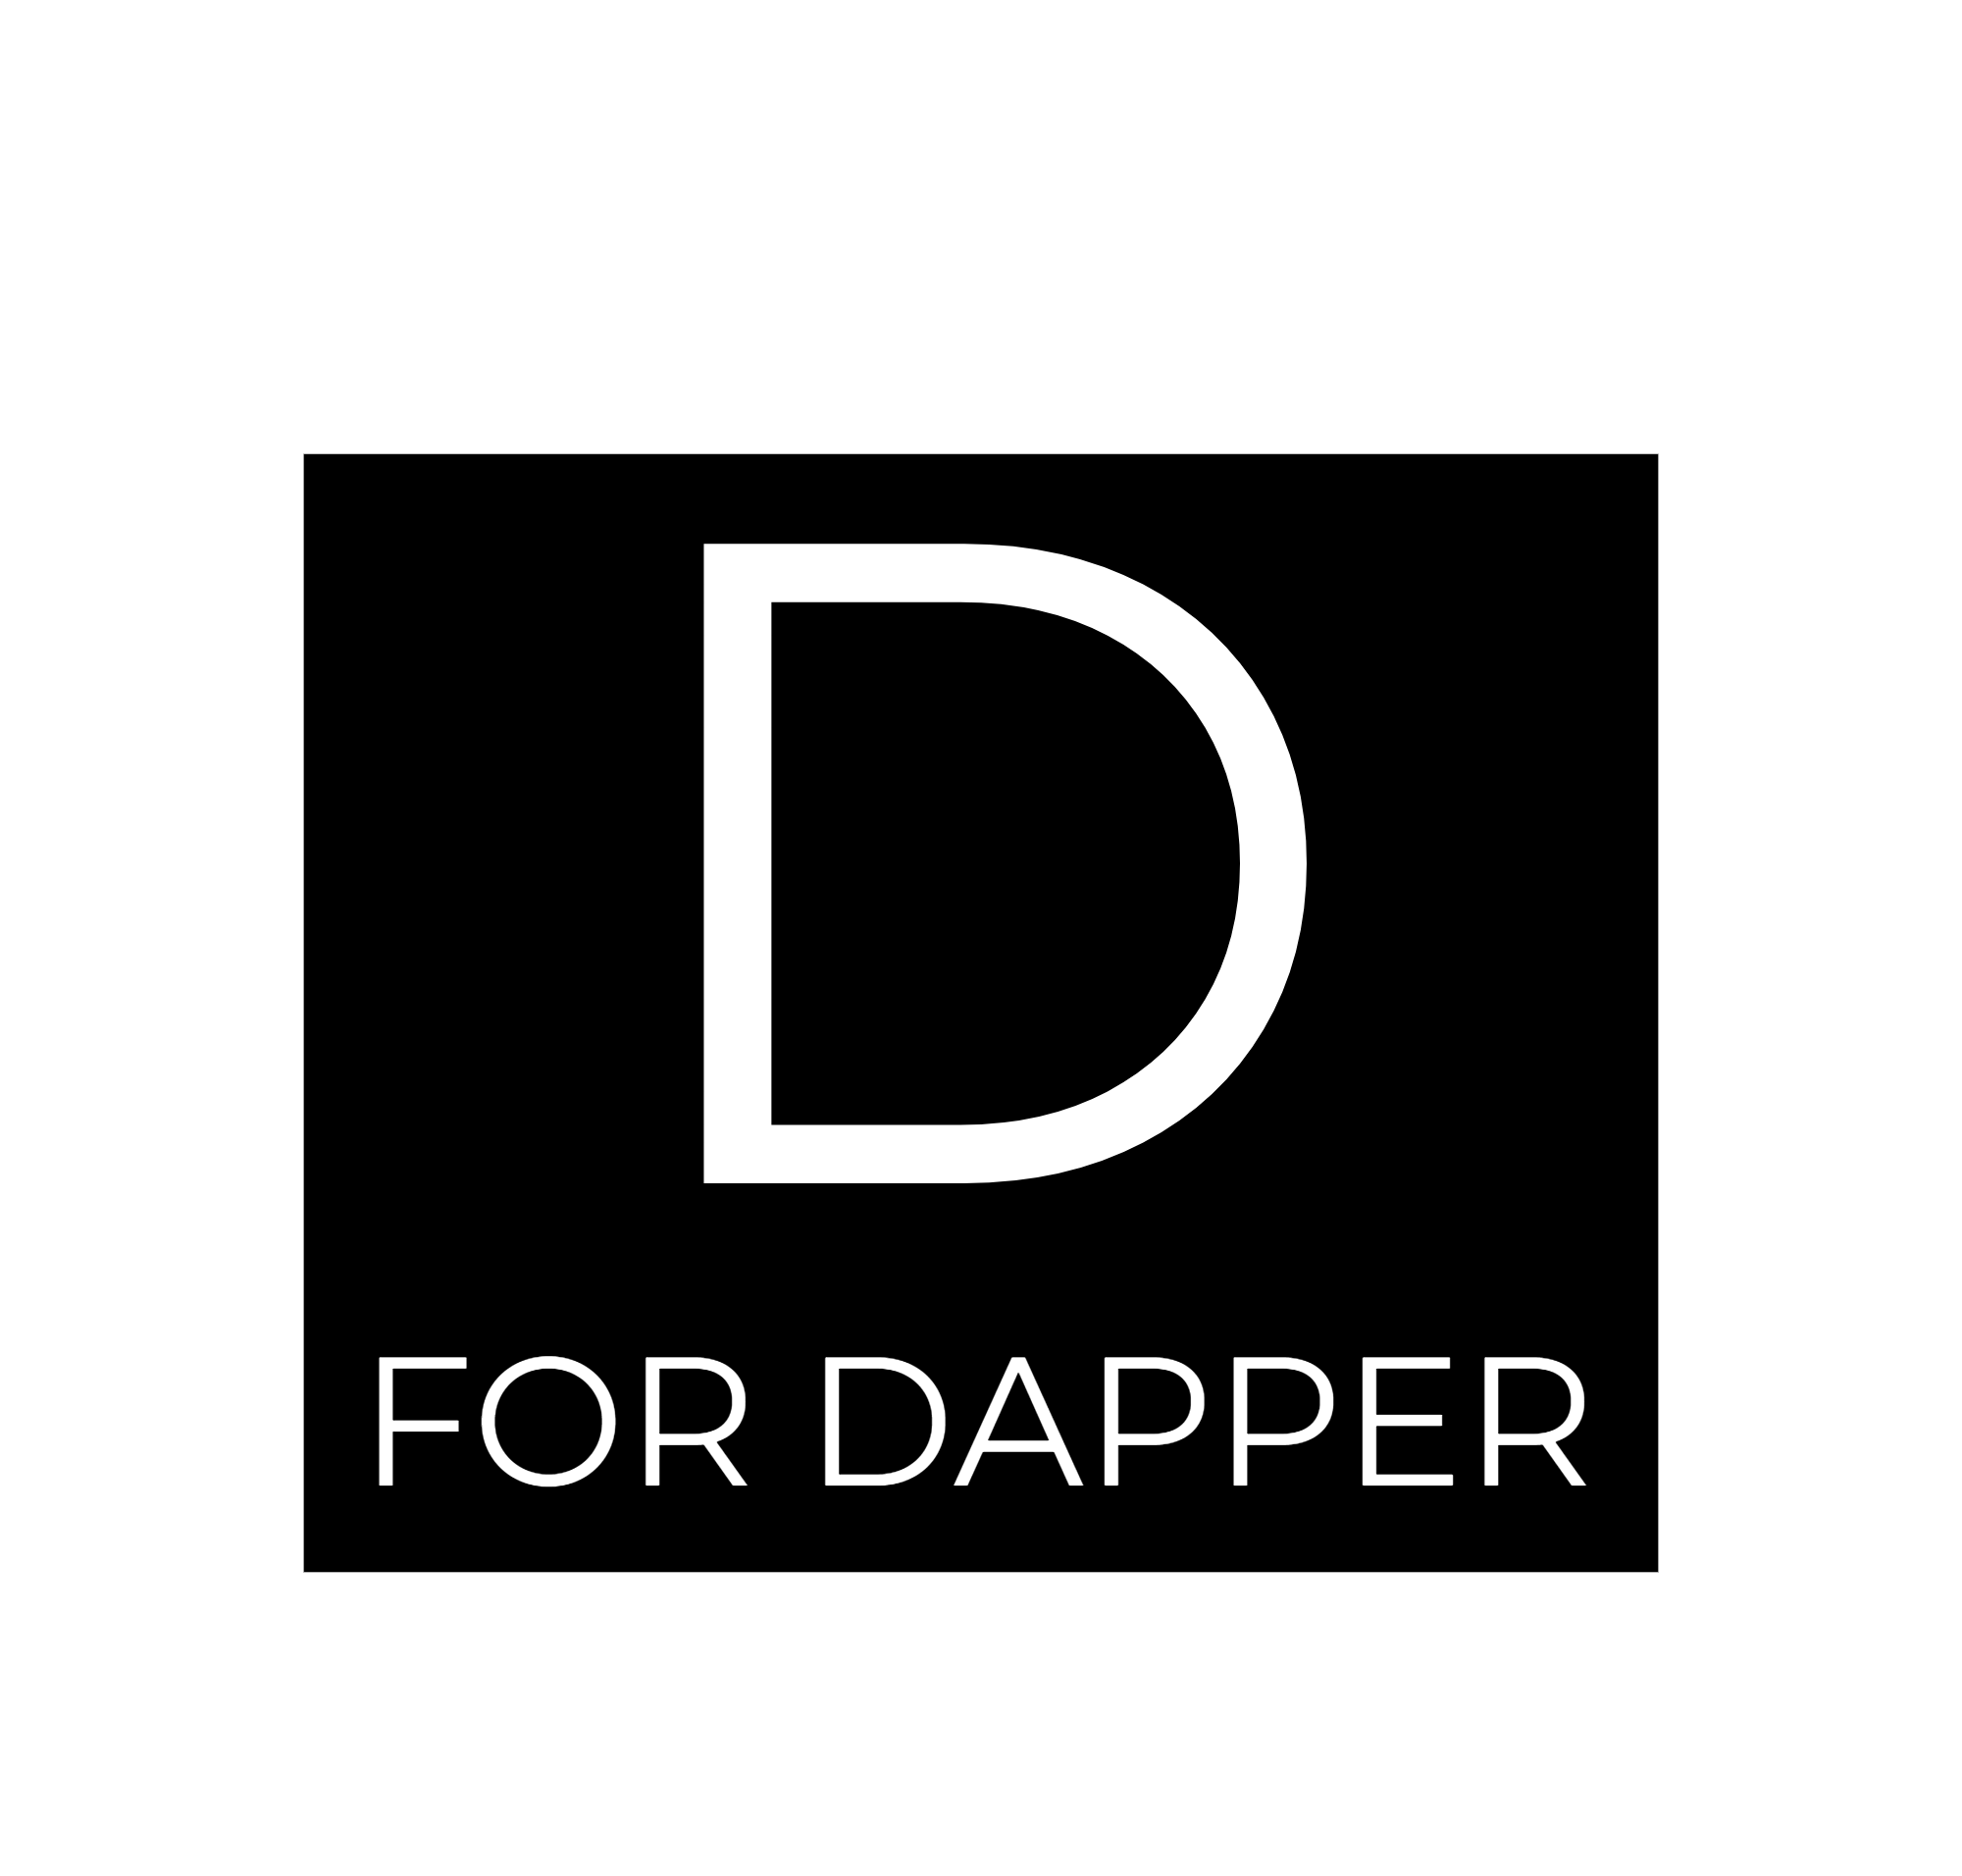 D FOR DAPPER